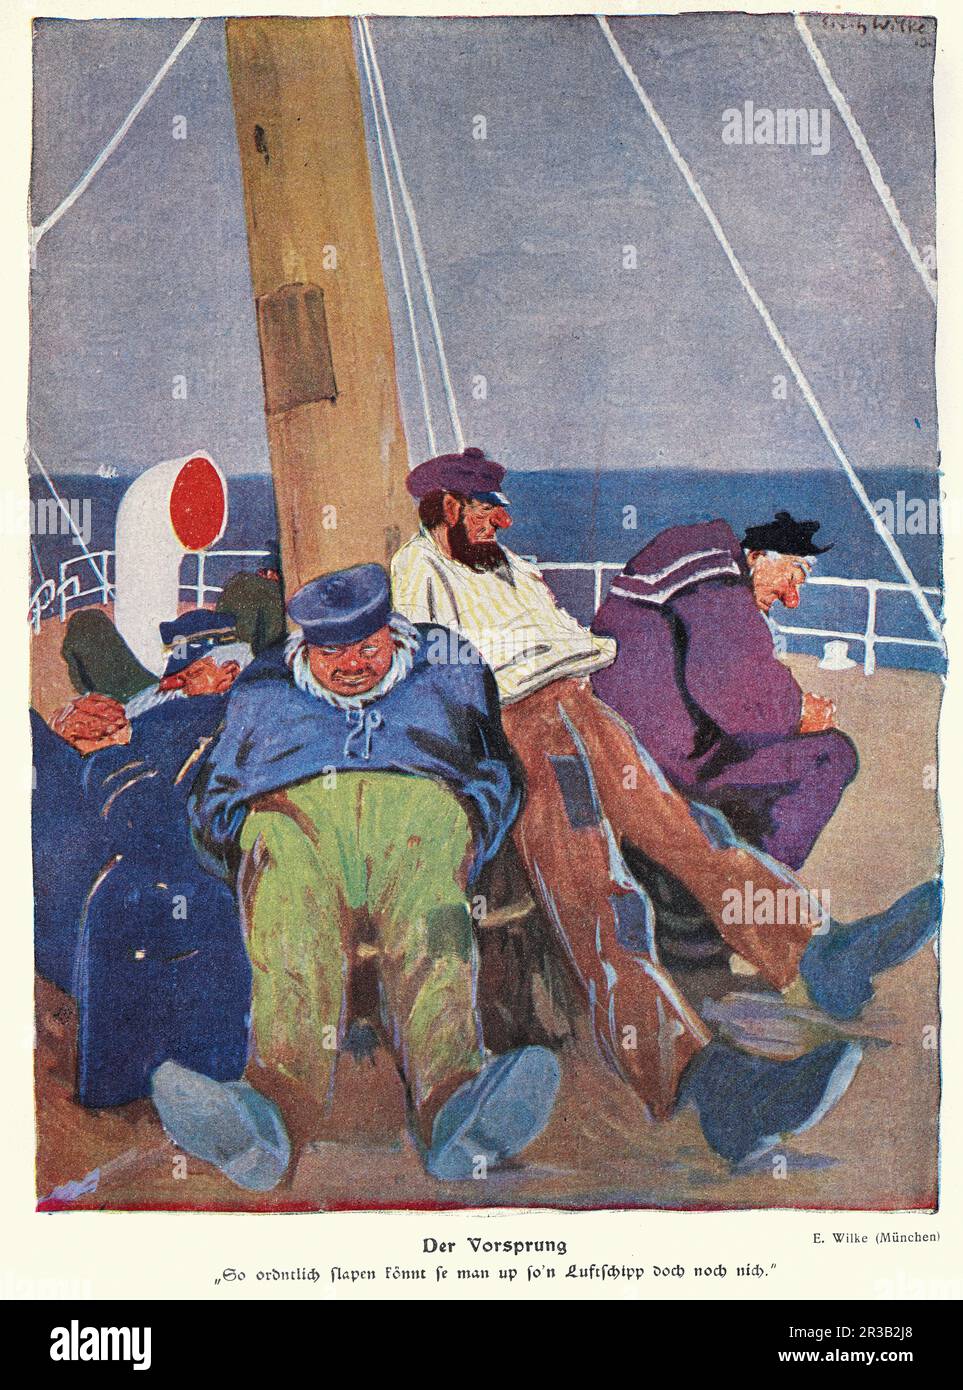 Alte Illustration, Gruppe alter Matrosen, die auf einem Schiff schlafen, der vorsprung, 1910er, Jugendstil, Erich Wilke Stockfoto